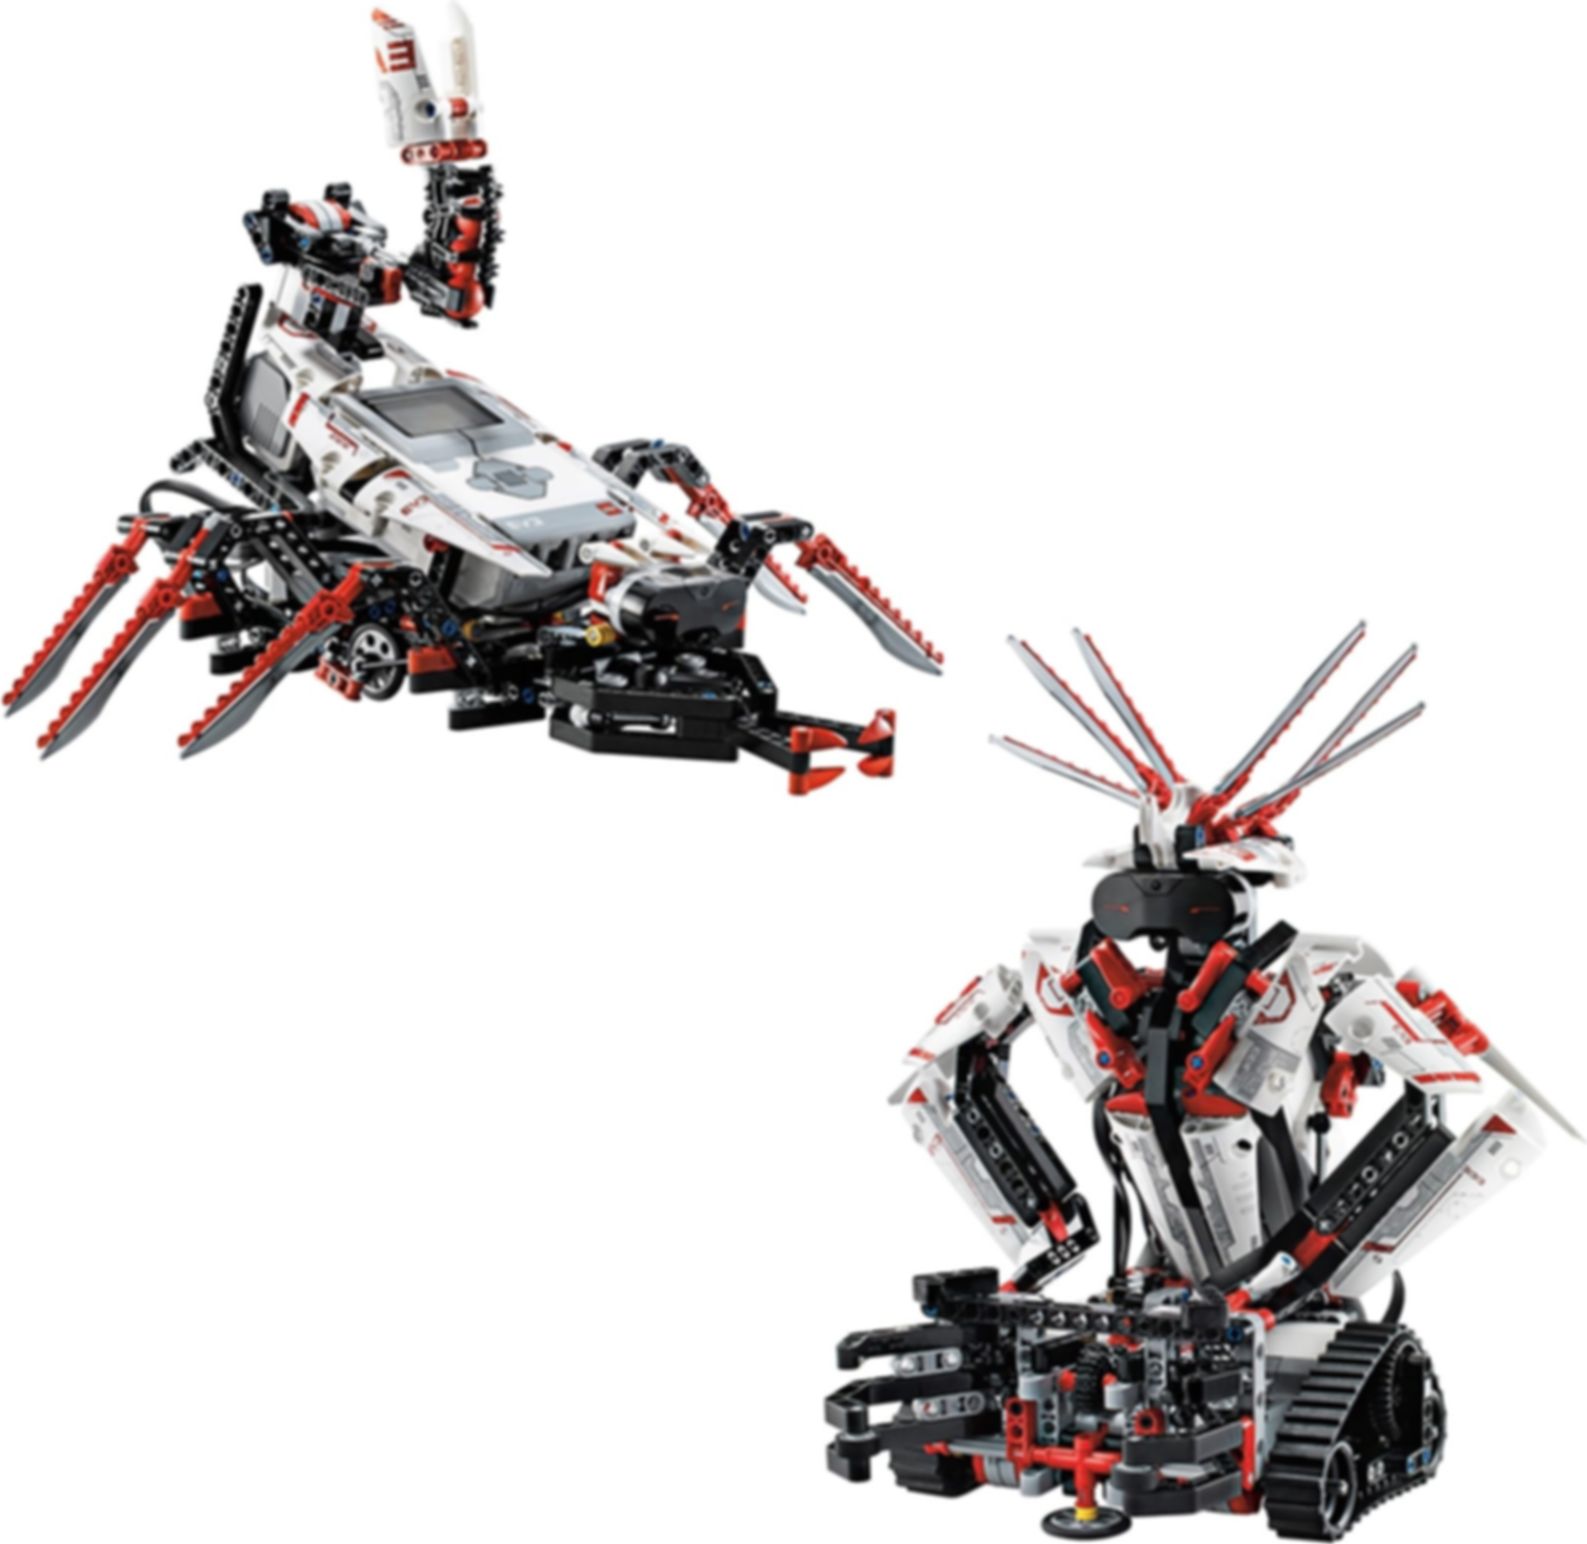 LEGO® Mindstorms® EV3 components